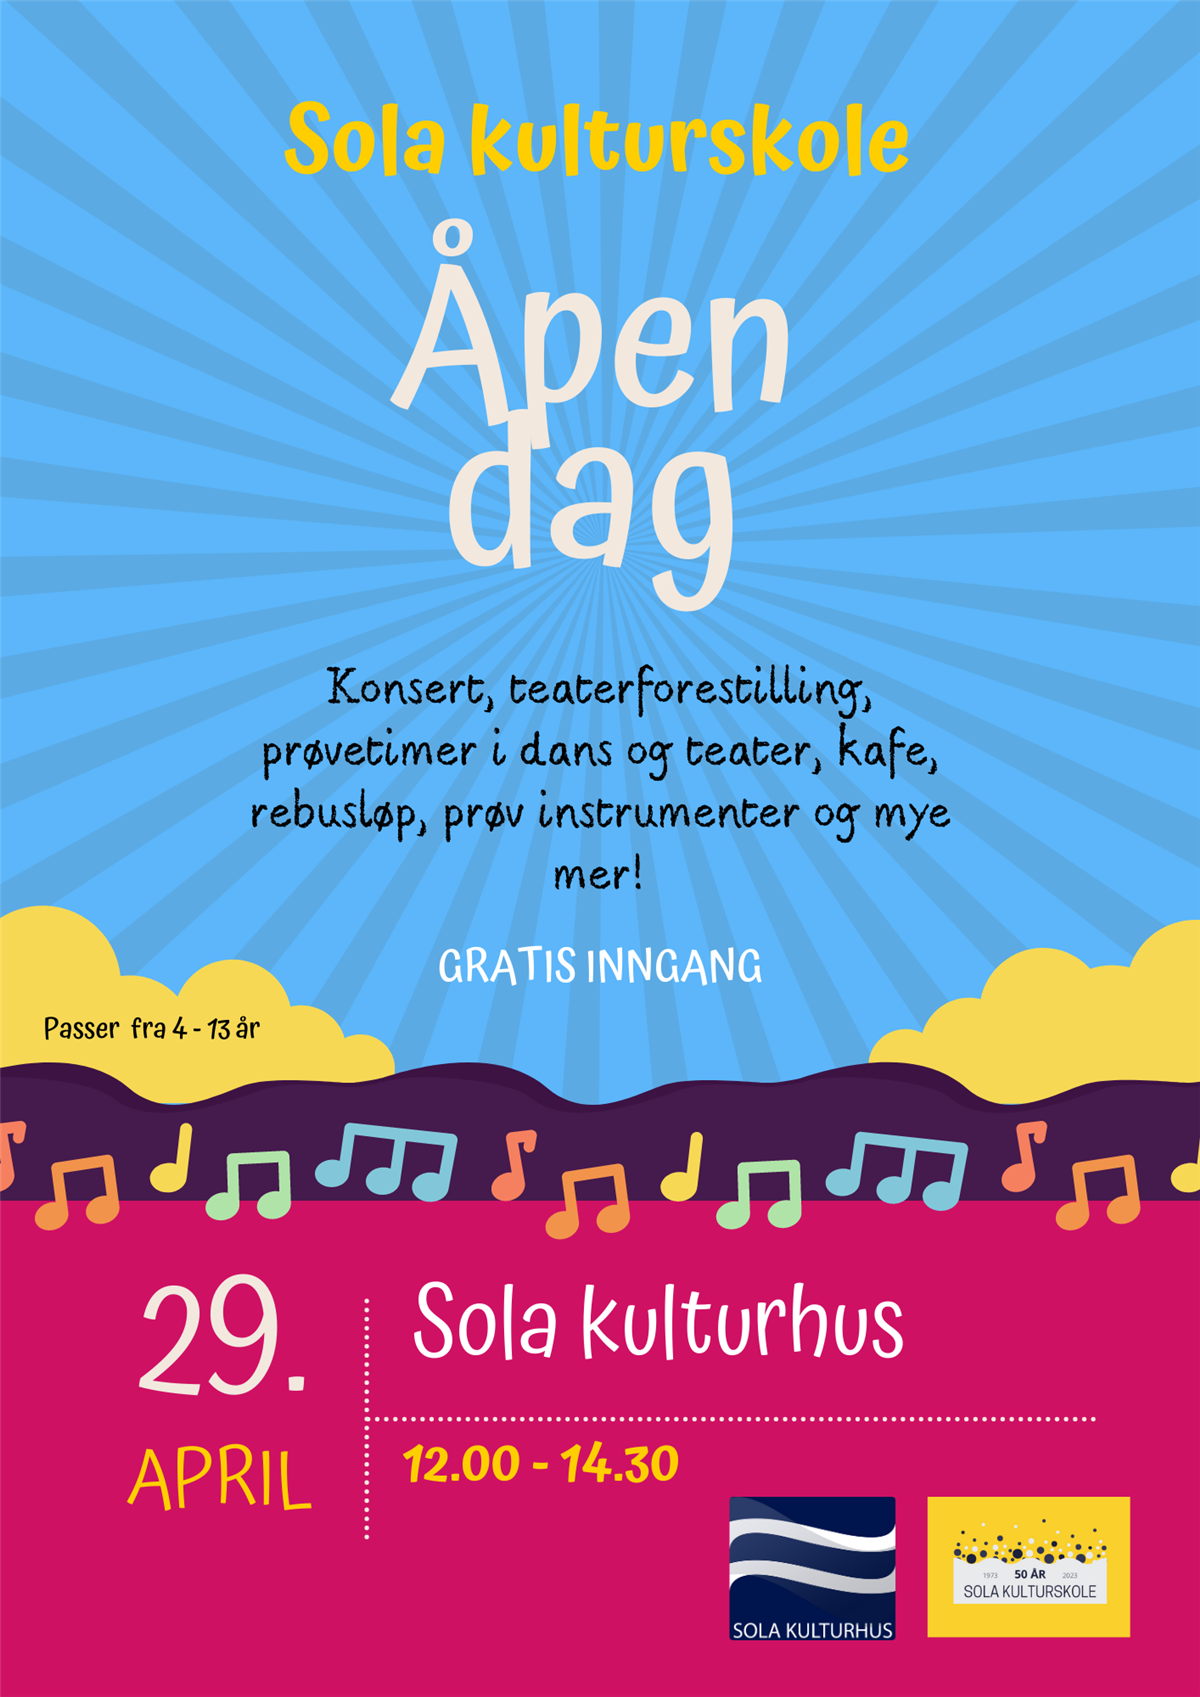 Plakat til åpen dag 29. april på Sola kulturhus 12.00-14.30.  - Klikk for stort bilde